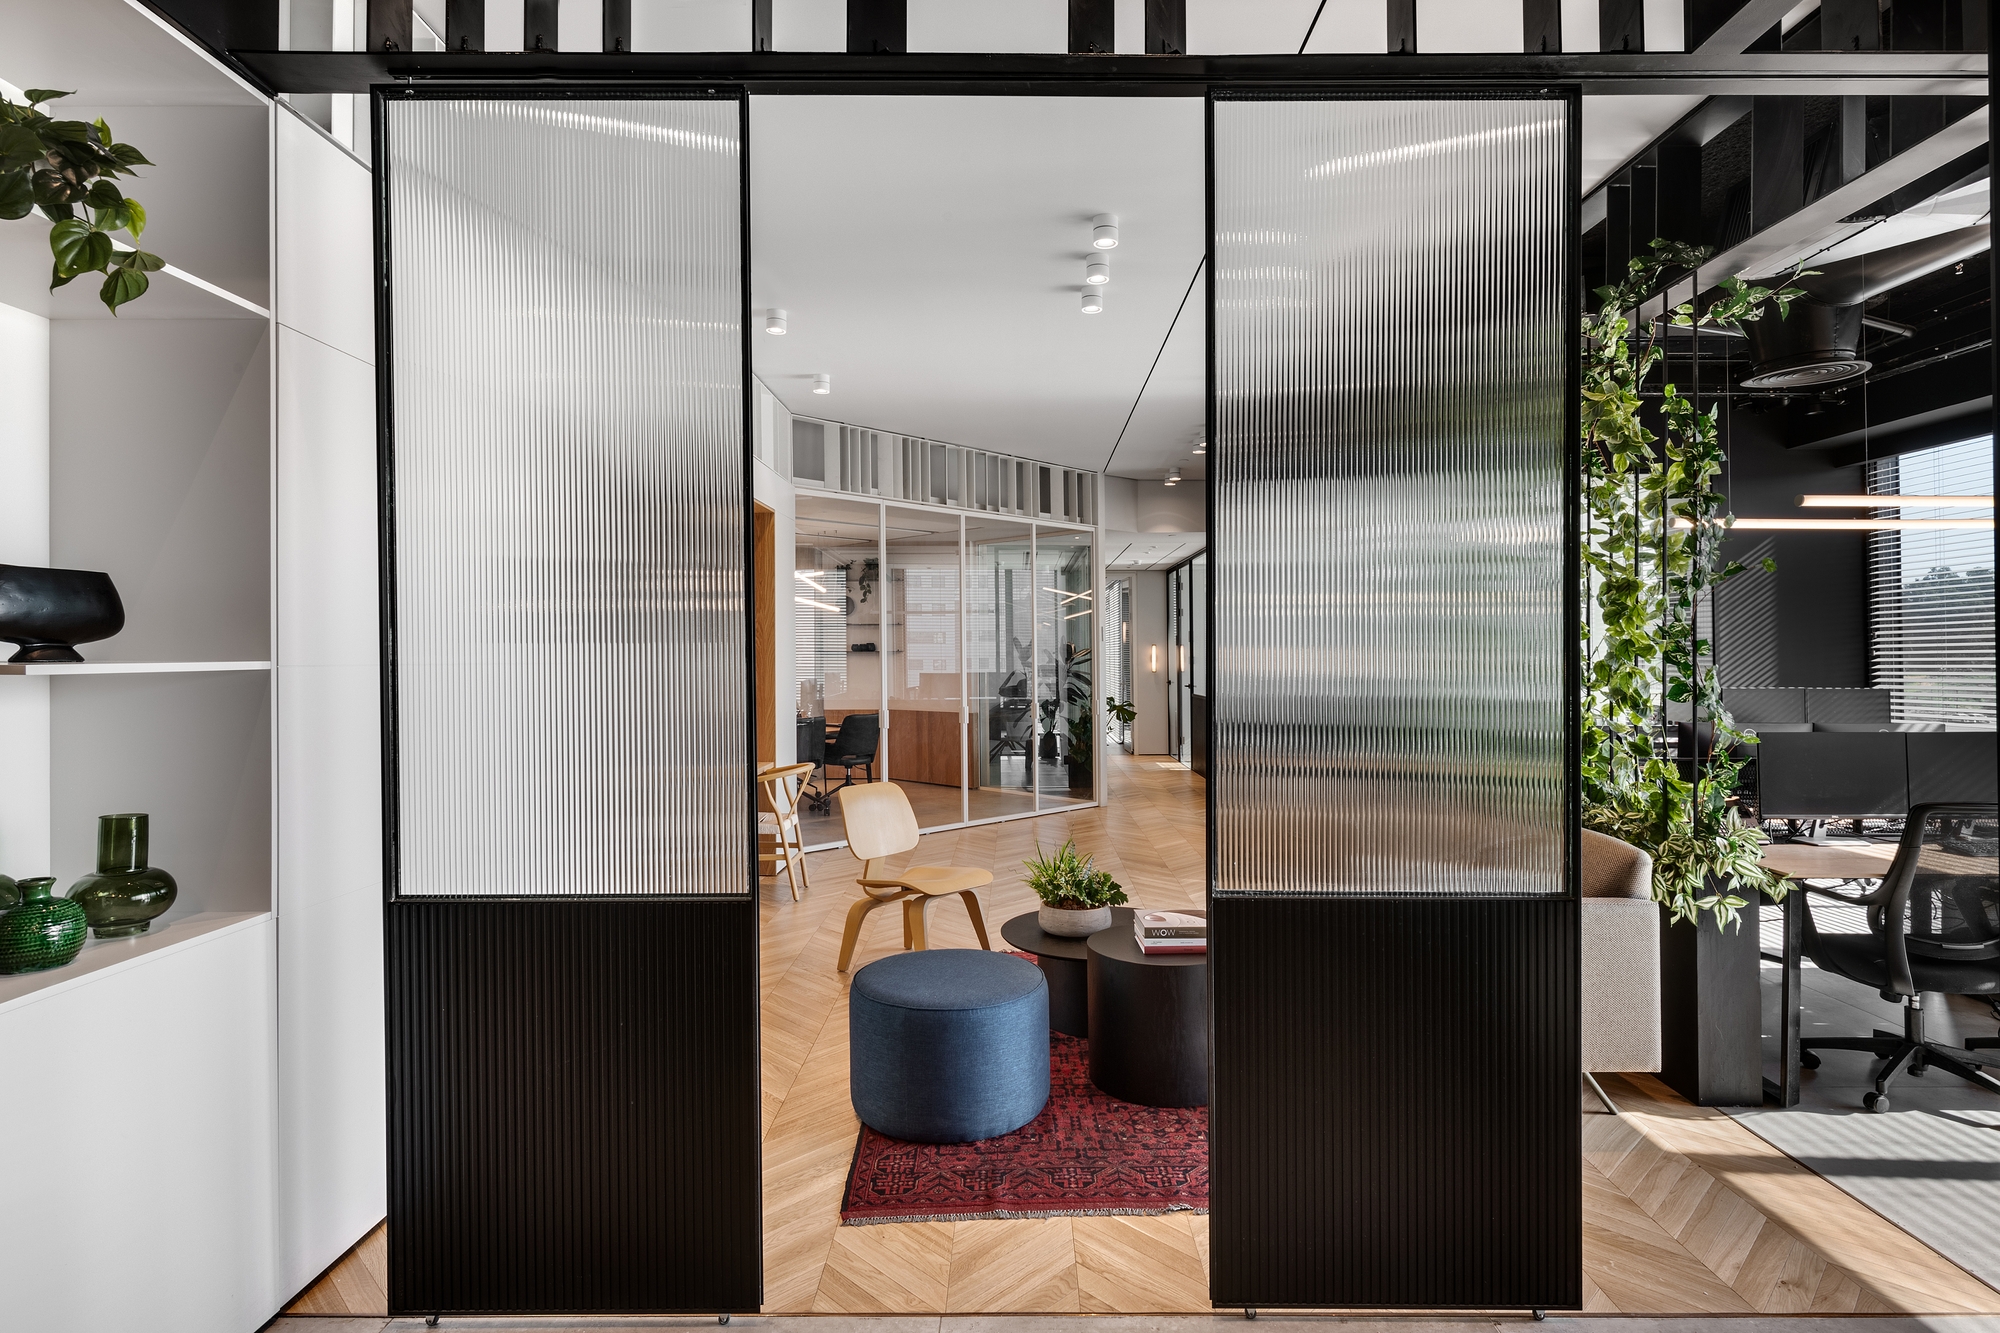 Reline办公室——以色列|ART-Arrakis | 建筑室内设计的创新与灵感